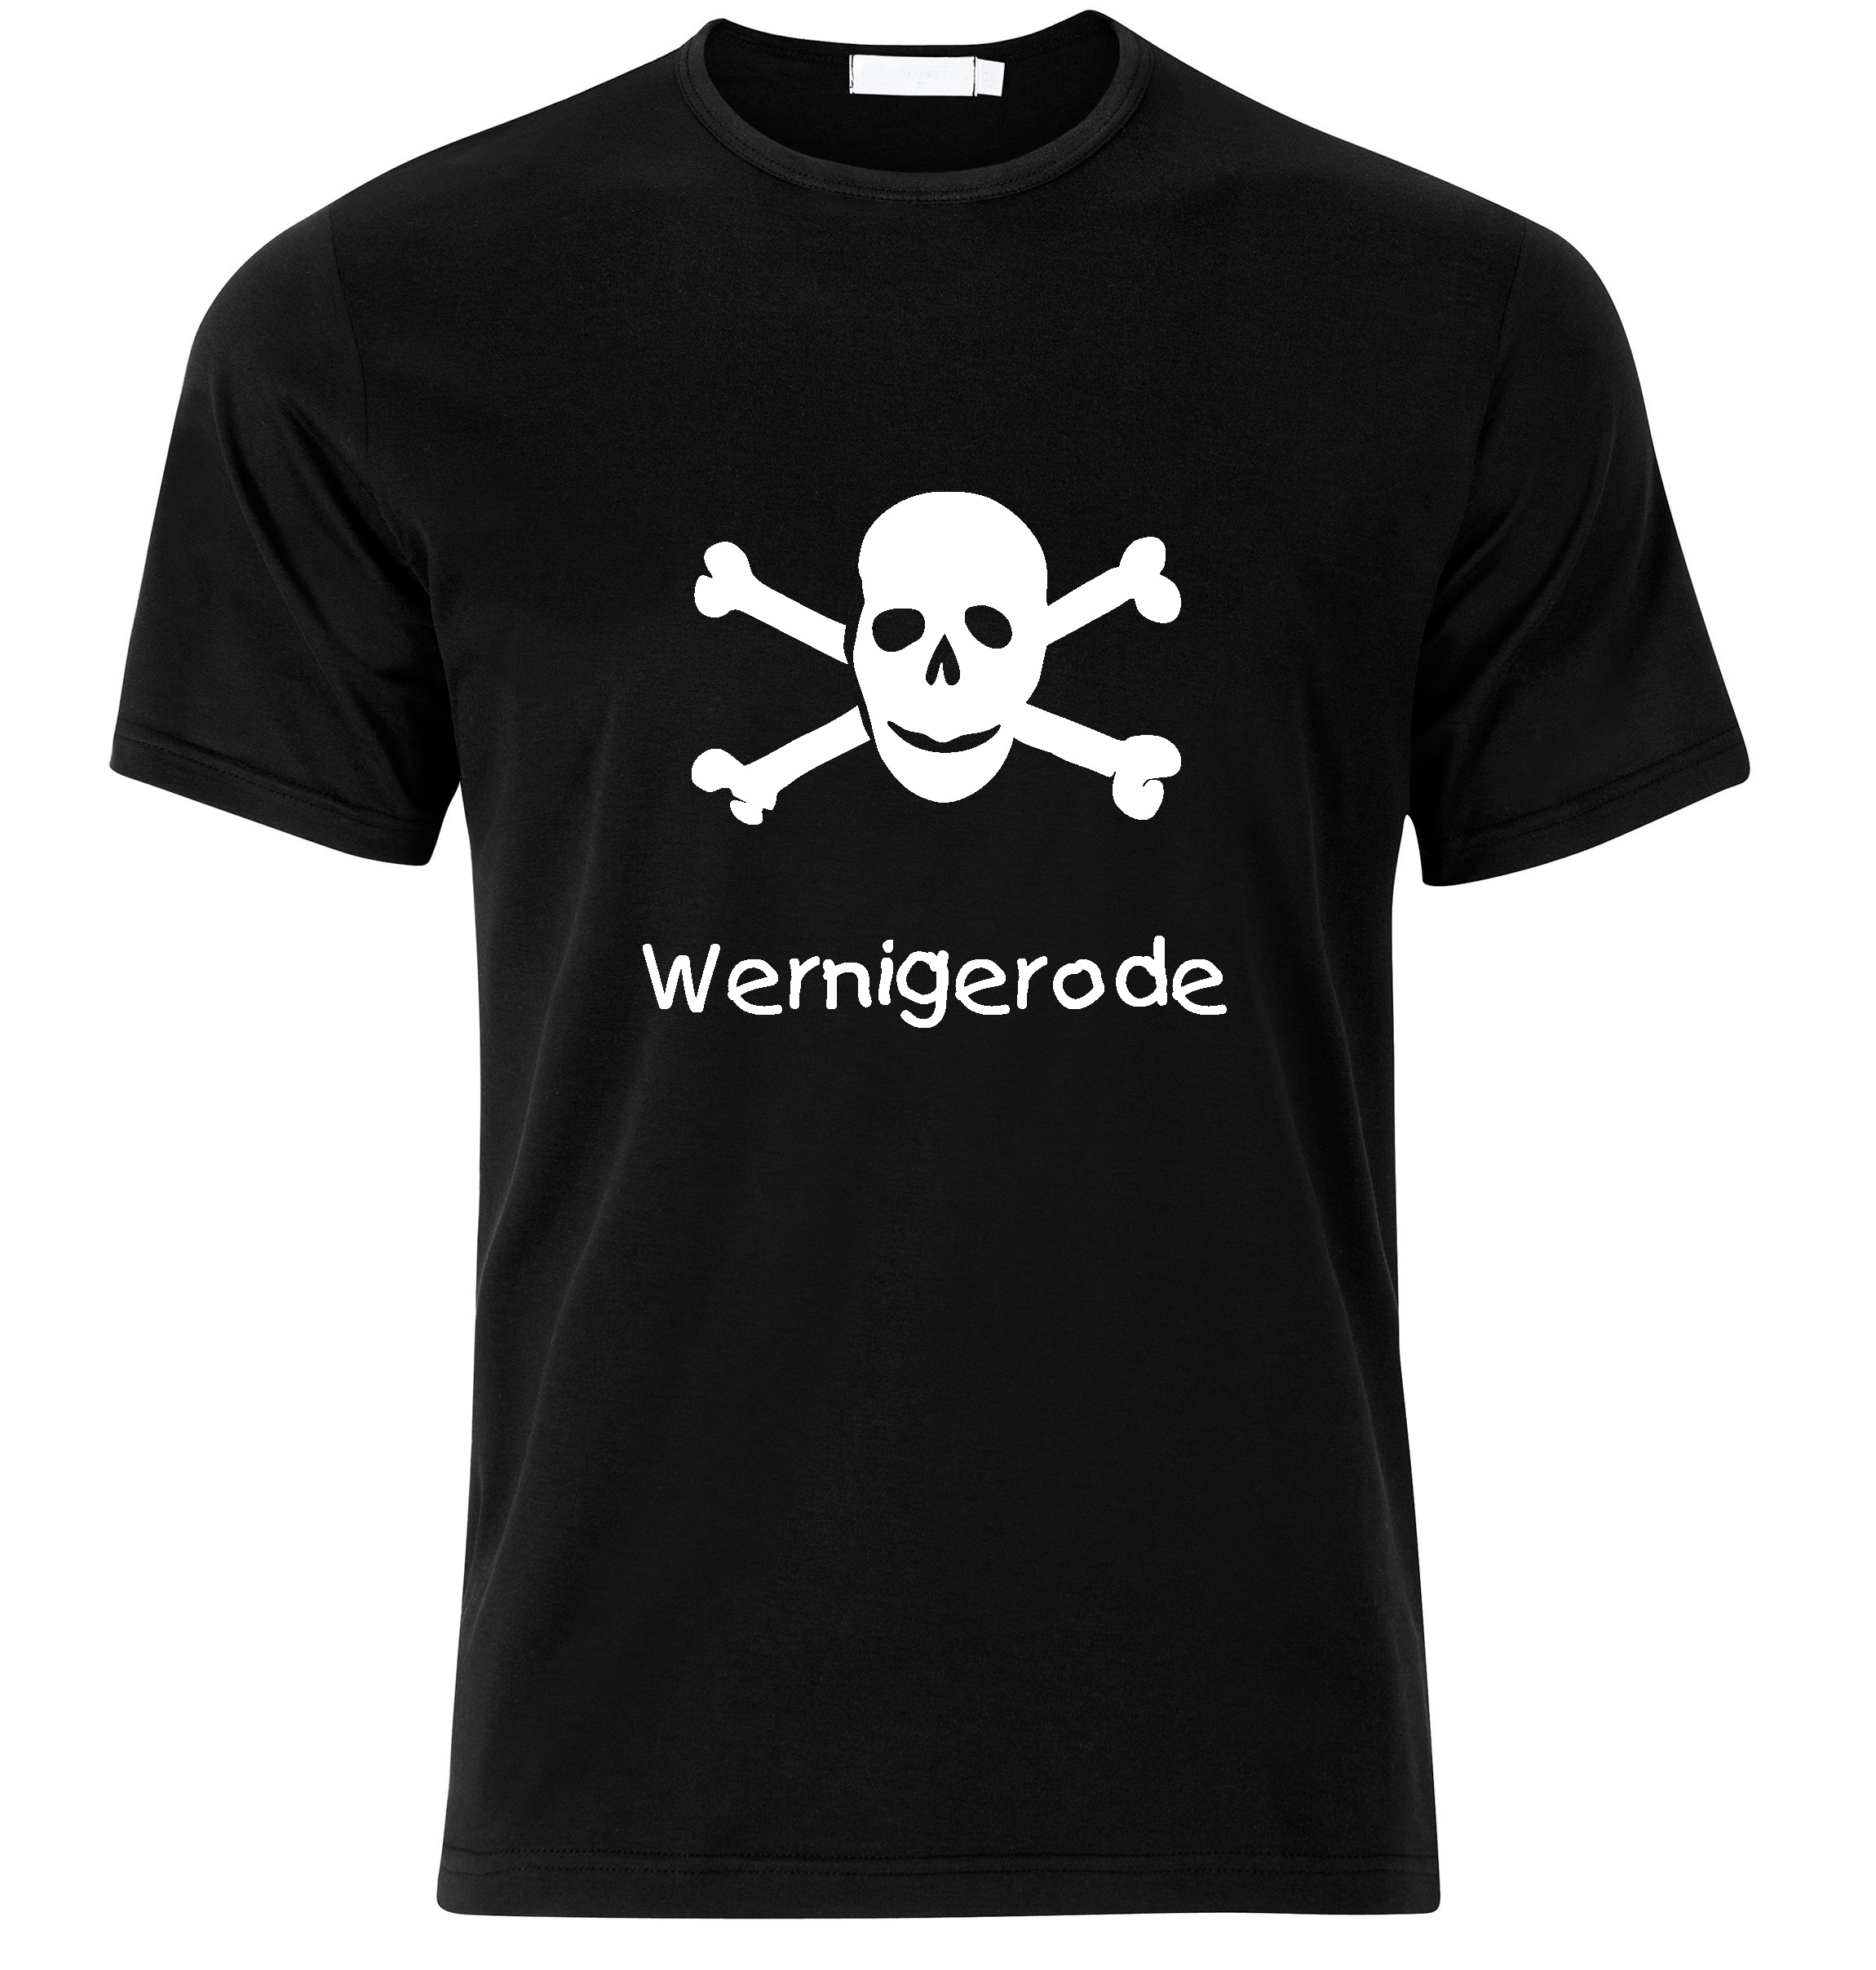 T-Shirt Wernigerode Jolly Roger, Totenkopf